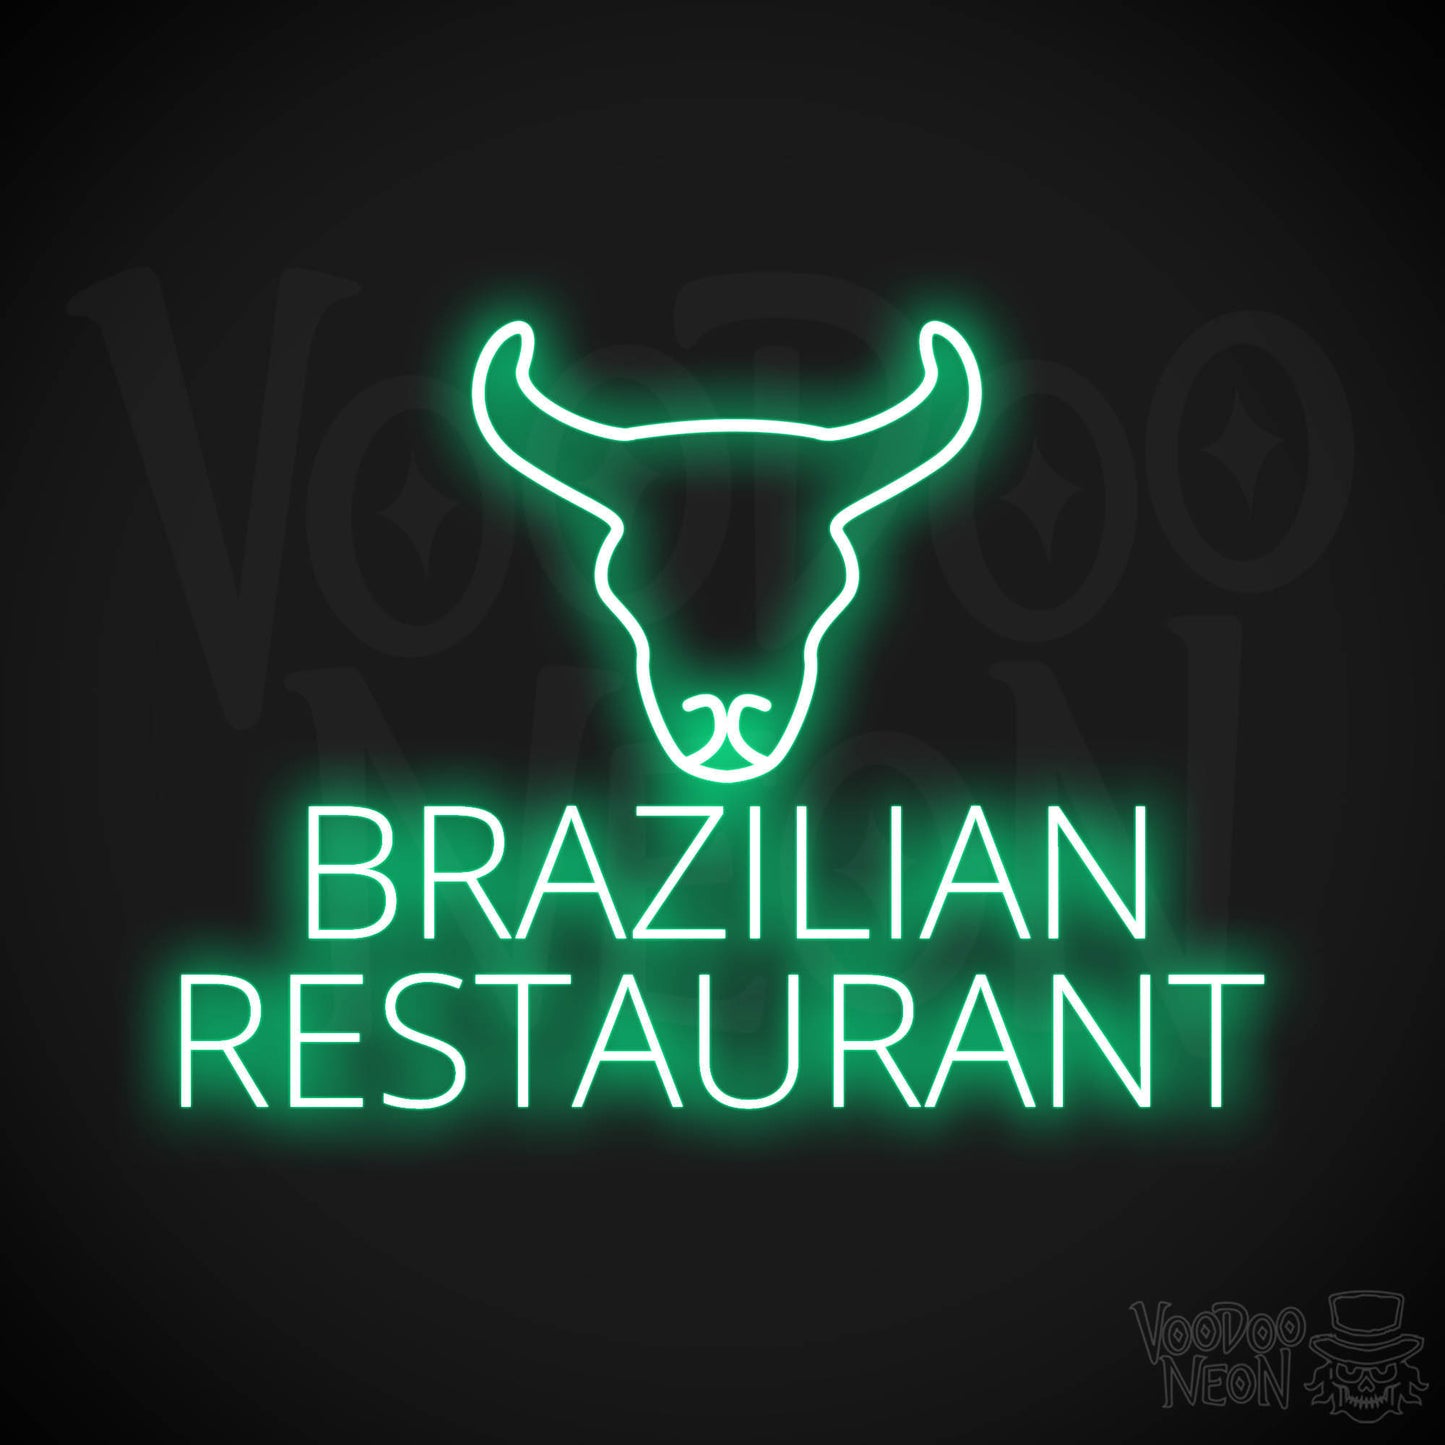 Brazilian Restaurant LED Neon - Green